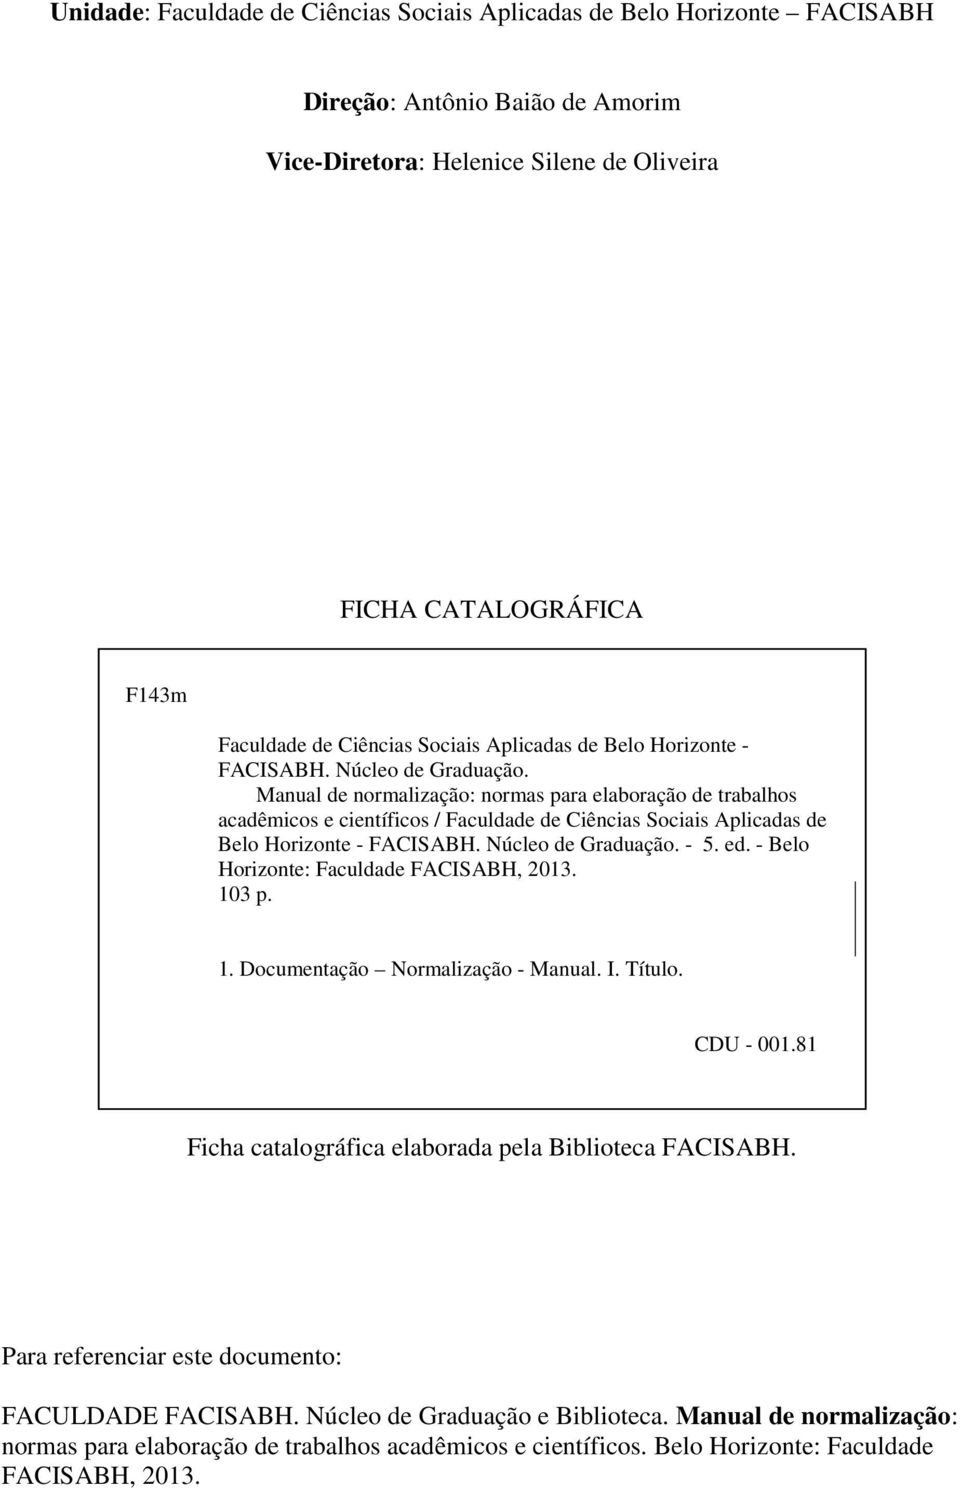 Manual de normalização: normas para elaboração de trabalhos acadêmicos e científicos / Faculdade de Ciências  - 5. ed. - Belo Horizonte: Faculdade FACISABH, 2013. 10